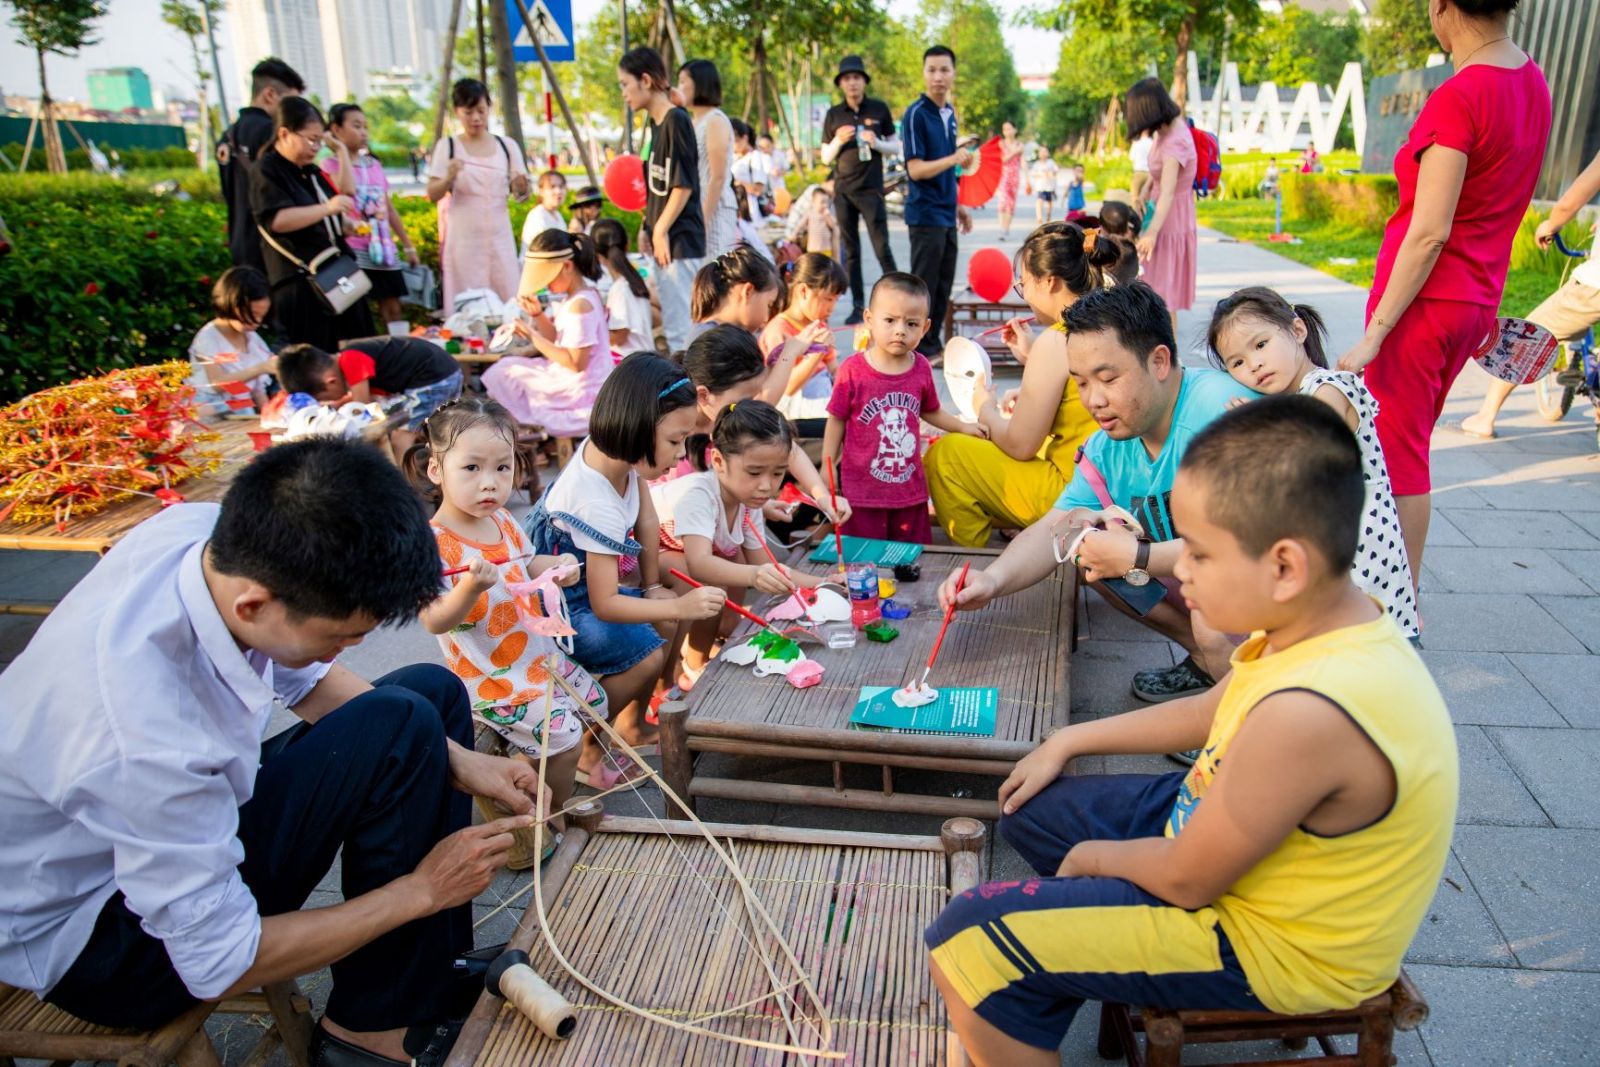 Chương trình Trung thu đươc tổ chức hàng năm tại ParkCity Hanoi thu hút đông đảo các bạn nhỏ và cha mẹ